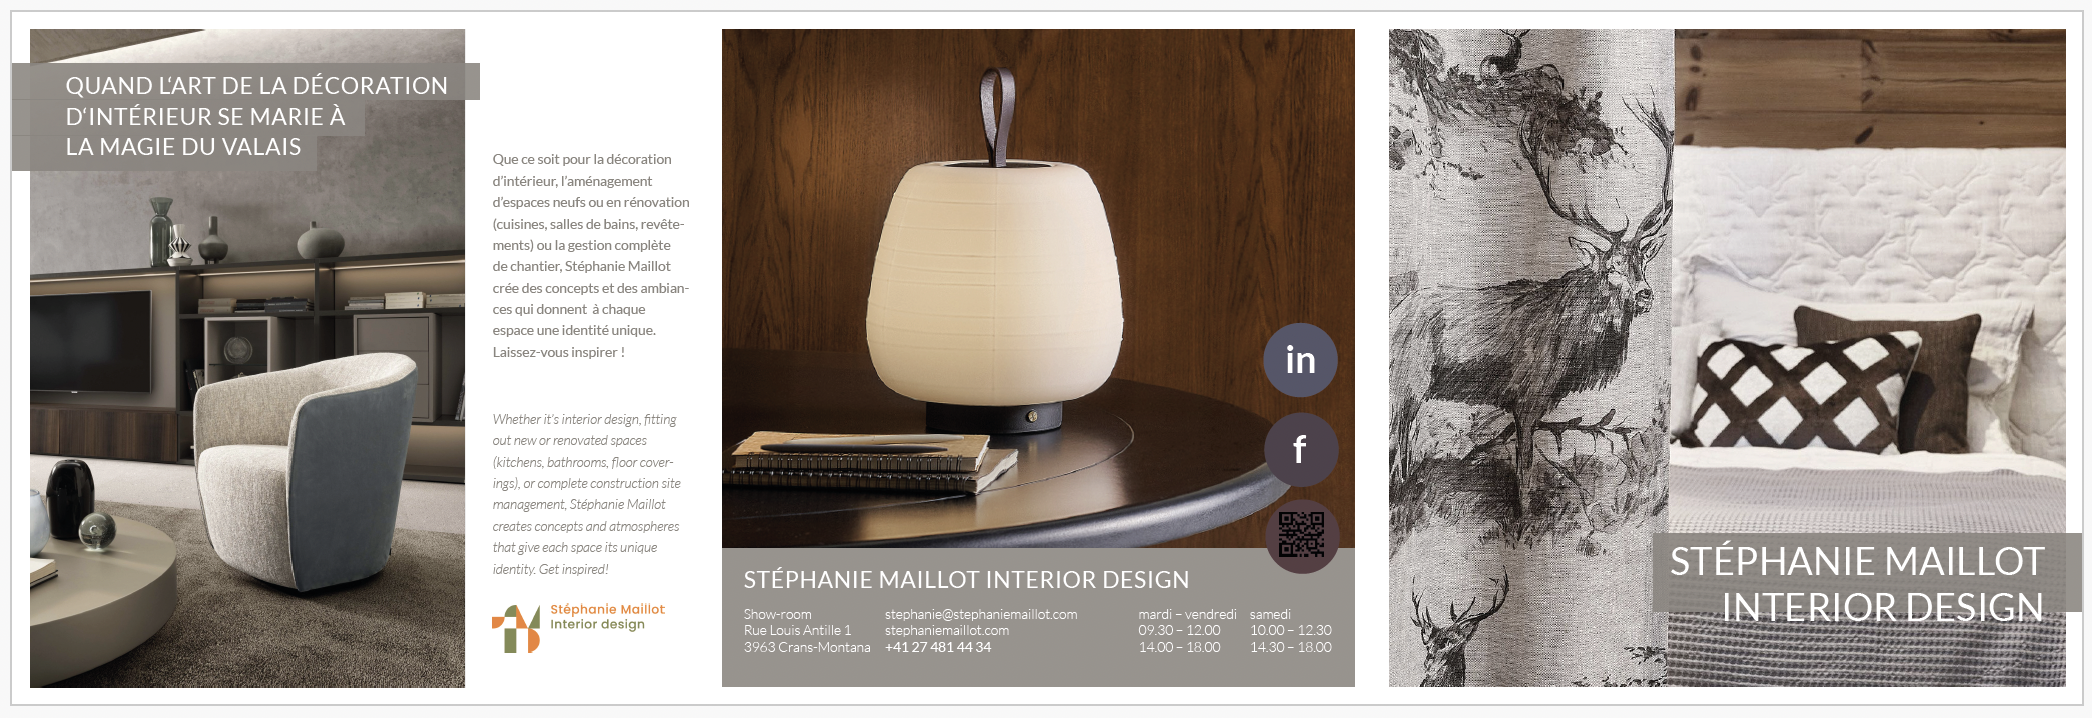 Stéphanie Maillot Interior Design, Crans-Montana (VS)